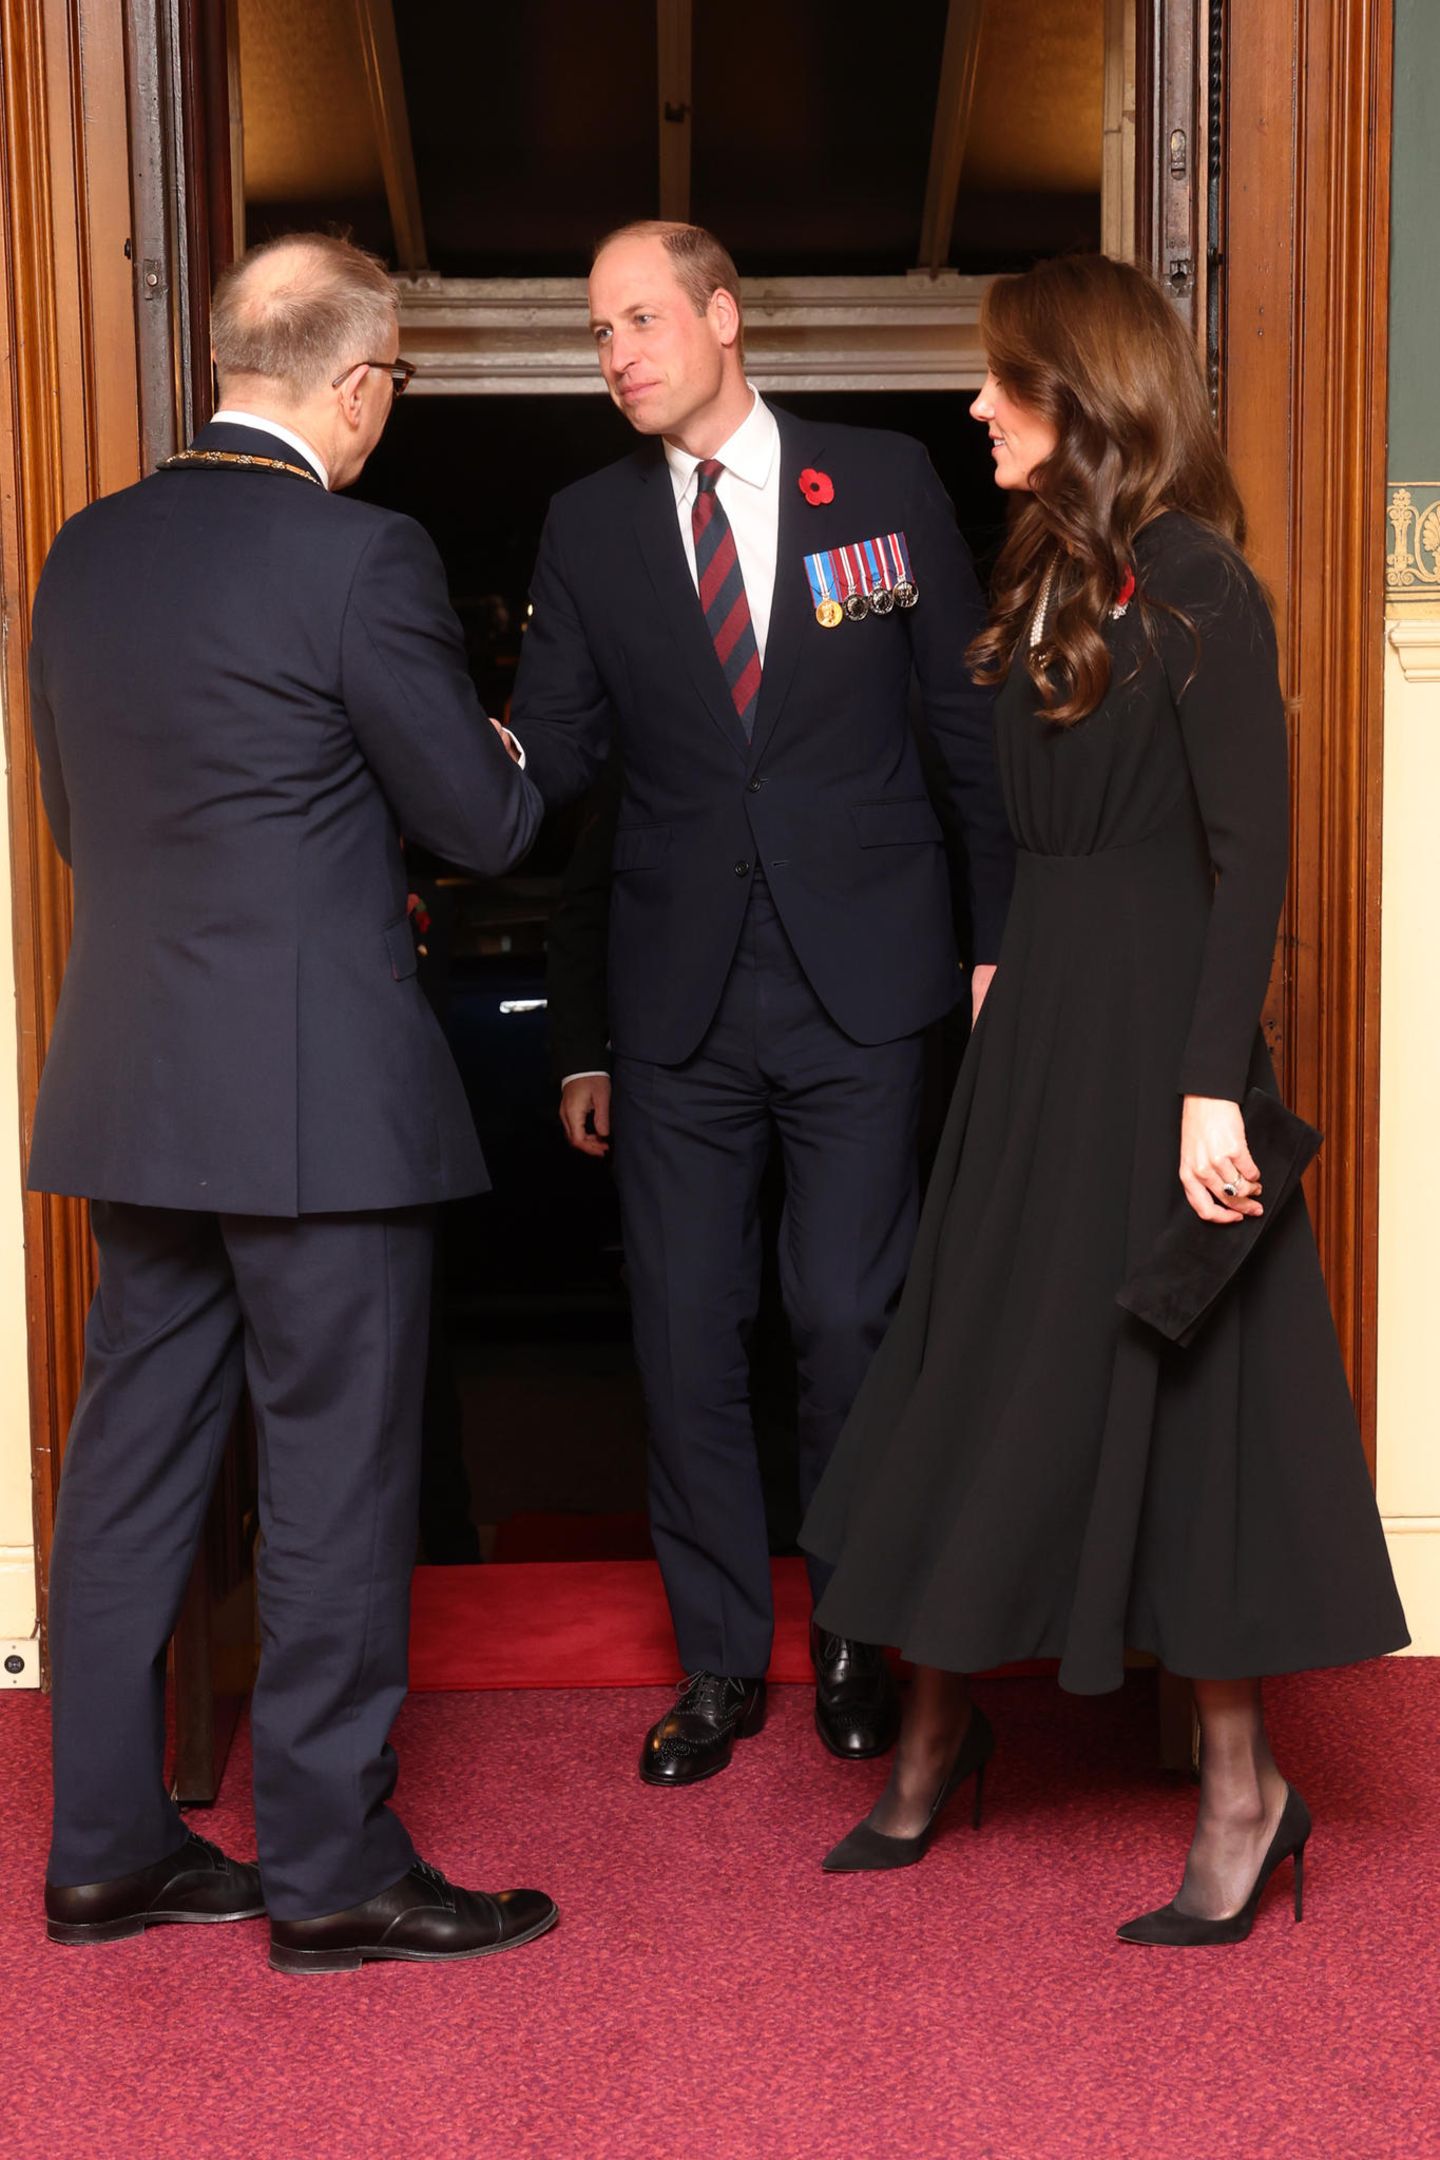 Ihm Rahmen des Remembrance Day am 11. November besucht Catherine, Princess of Wales, zusammen mit William und weiteren hochrangigen Mitgliedern der königlichen Familie das traditionelle "Festival der Erinnerung" in der Royal Albert Hall in London.